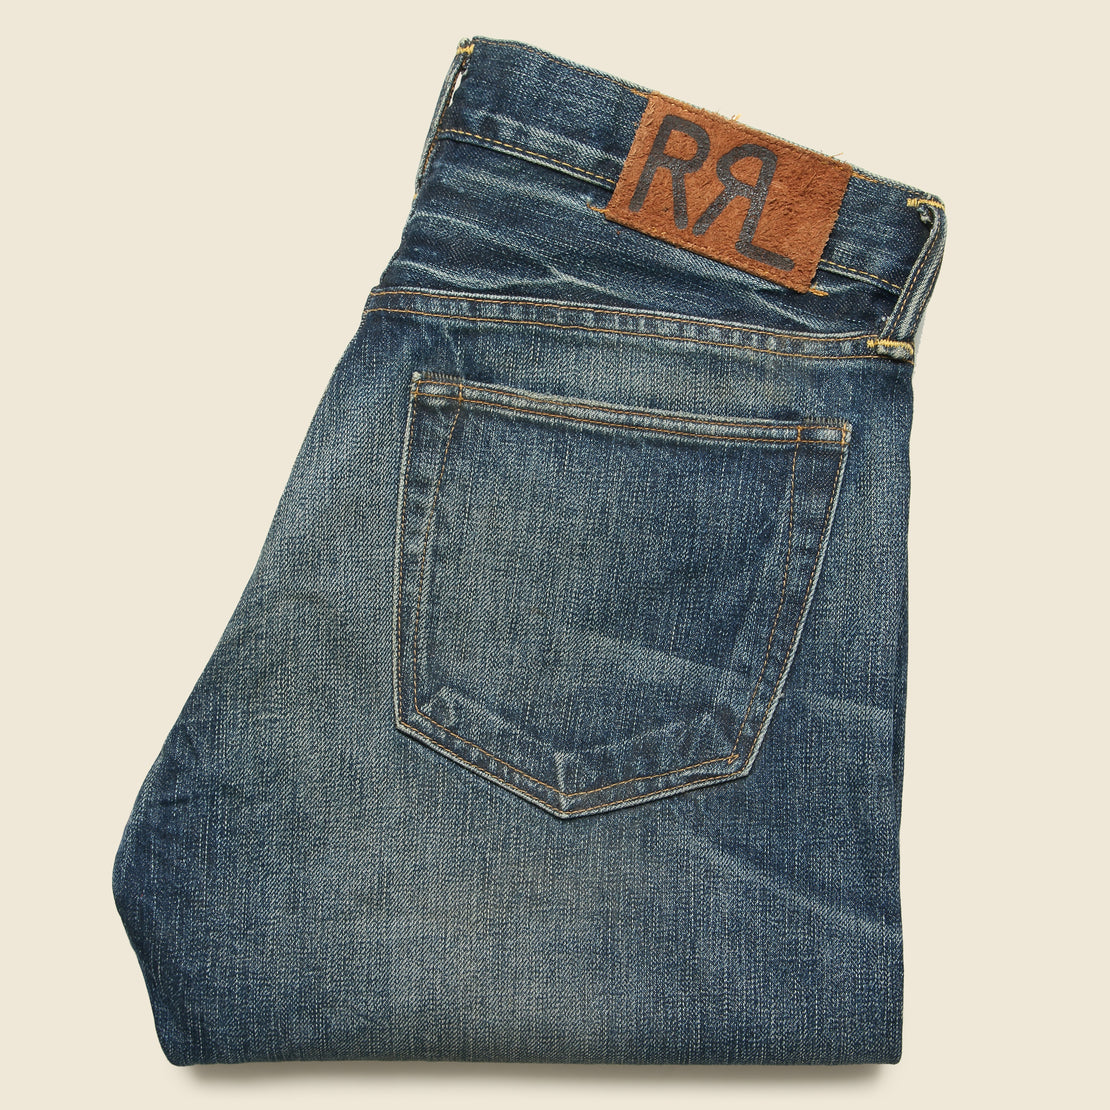 Slim Fit Jean - Ridgecrest Wash - RRL - STAG Provisions - Pants - Denim